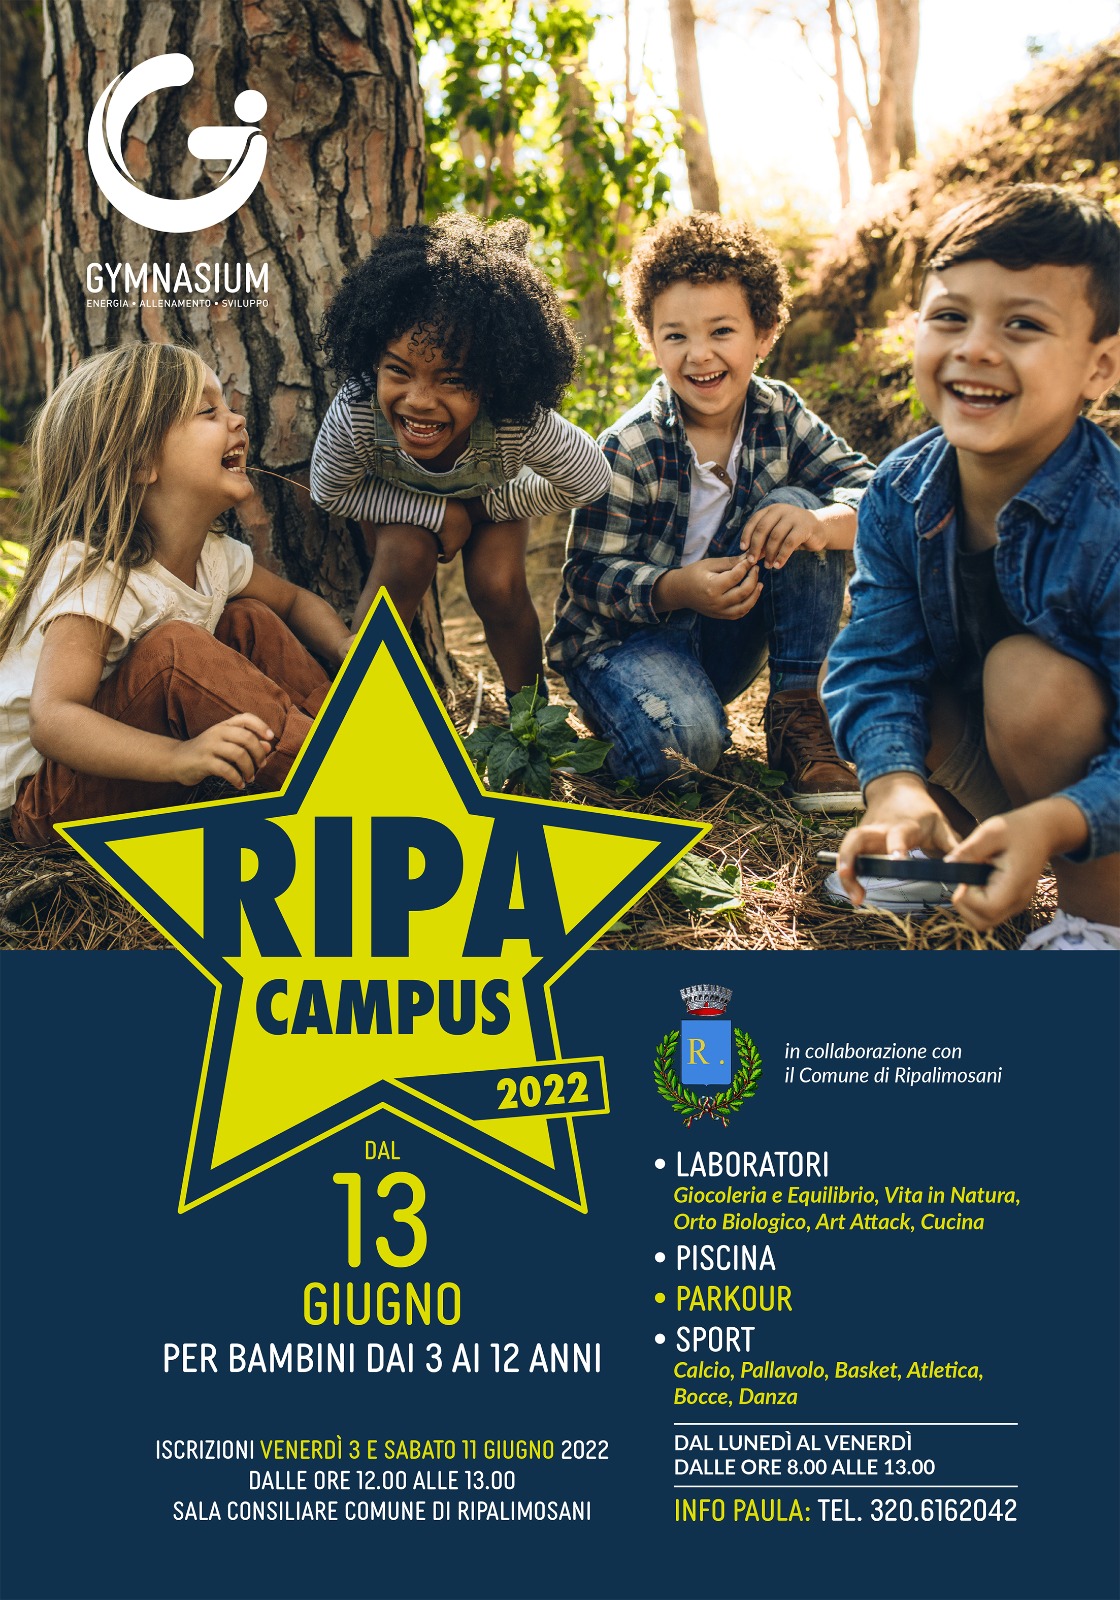 Ripa-Campus-2022.jpg